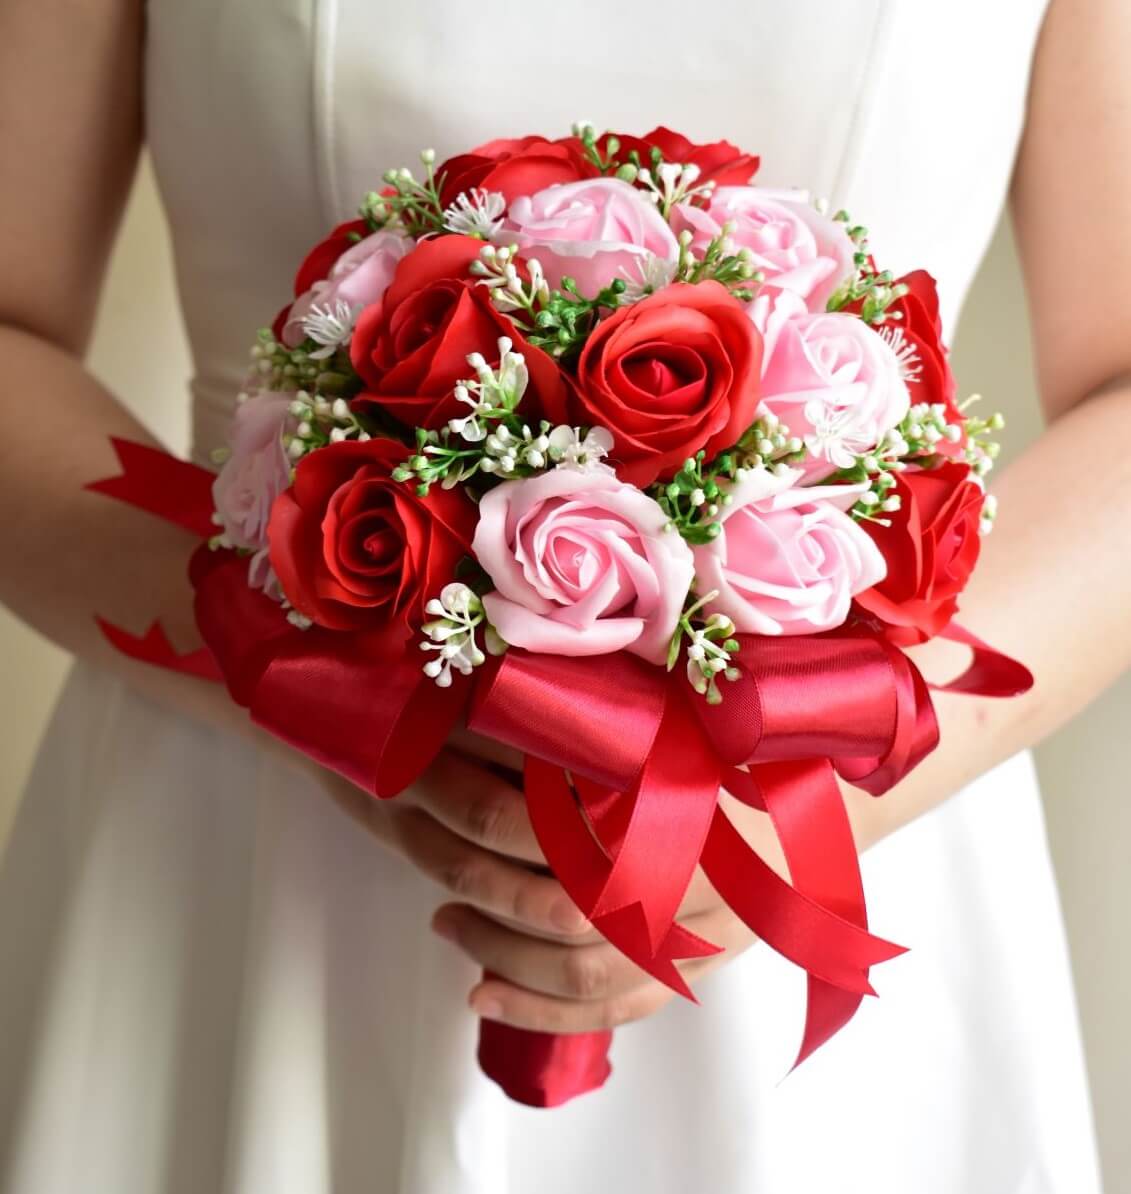 Hoa hồng - Các loại hoa cưới cầm tay thường dùng